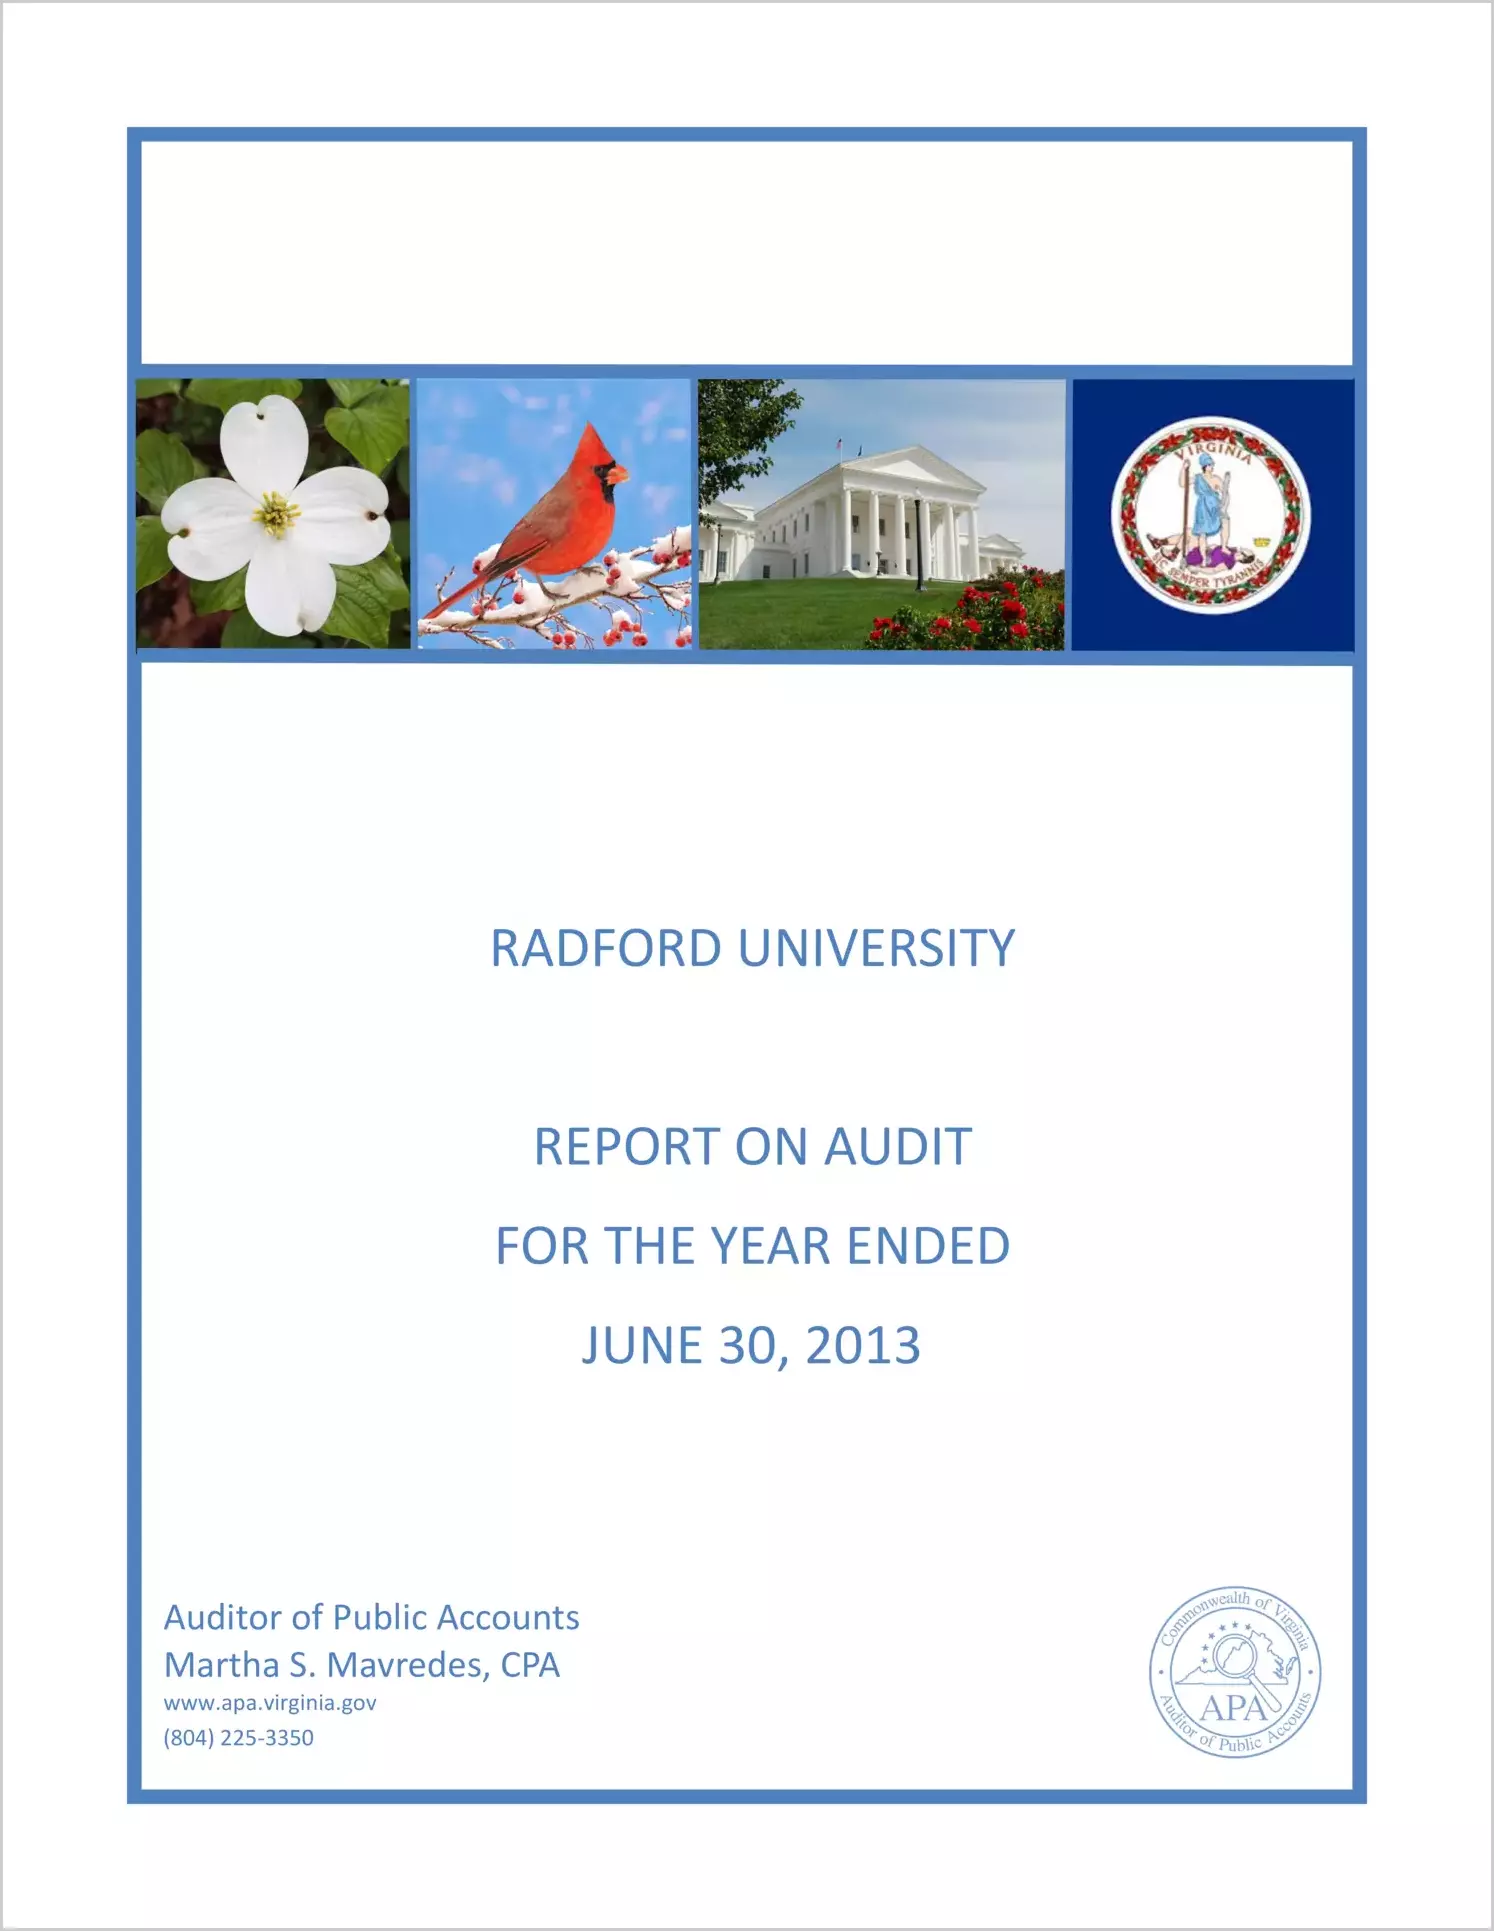 Radford University report on audit for year ending June 30, 2013